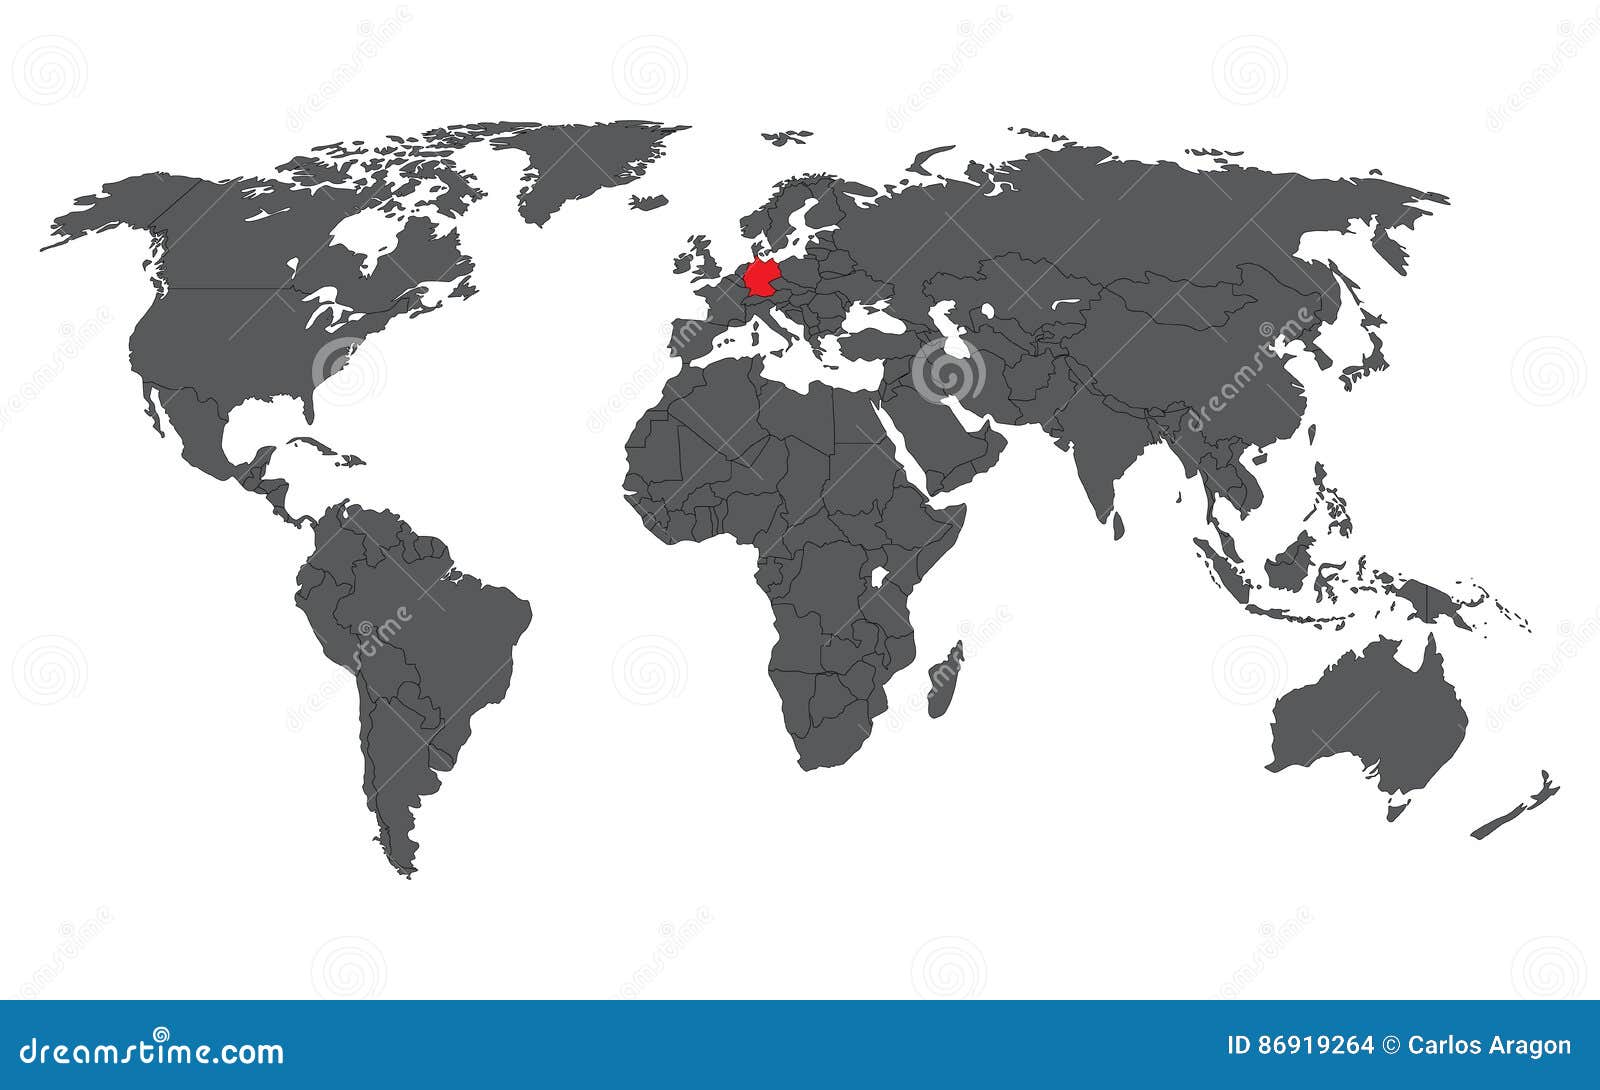 Featured image of post Alemanha Mapa Mundi - As feições da superfície da terra podem ser representadas de várias maneiras.